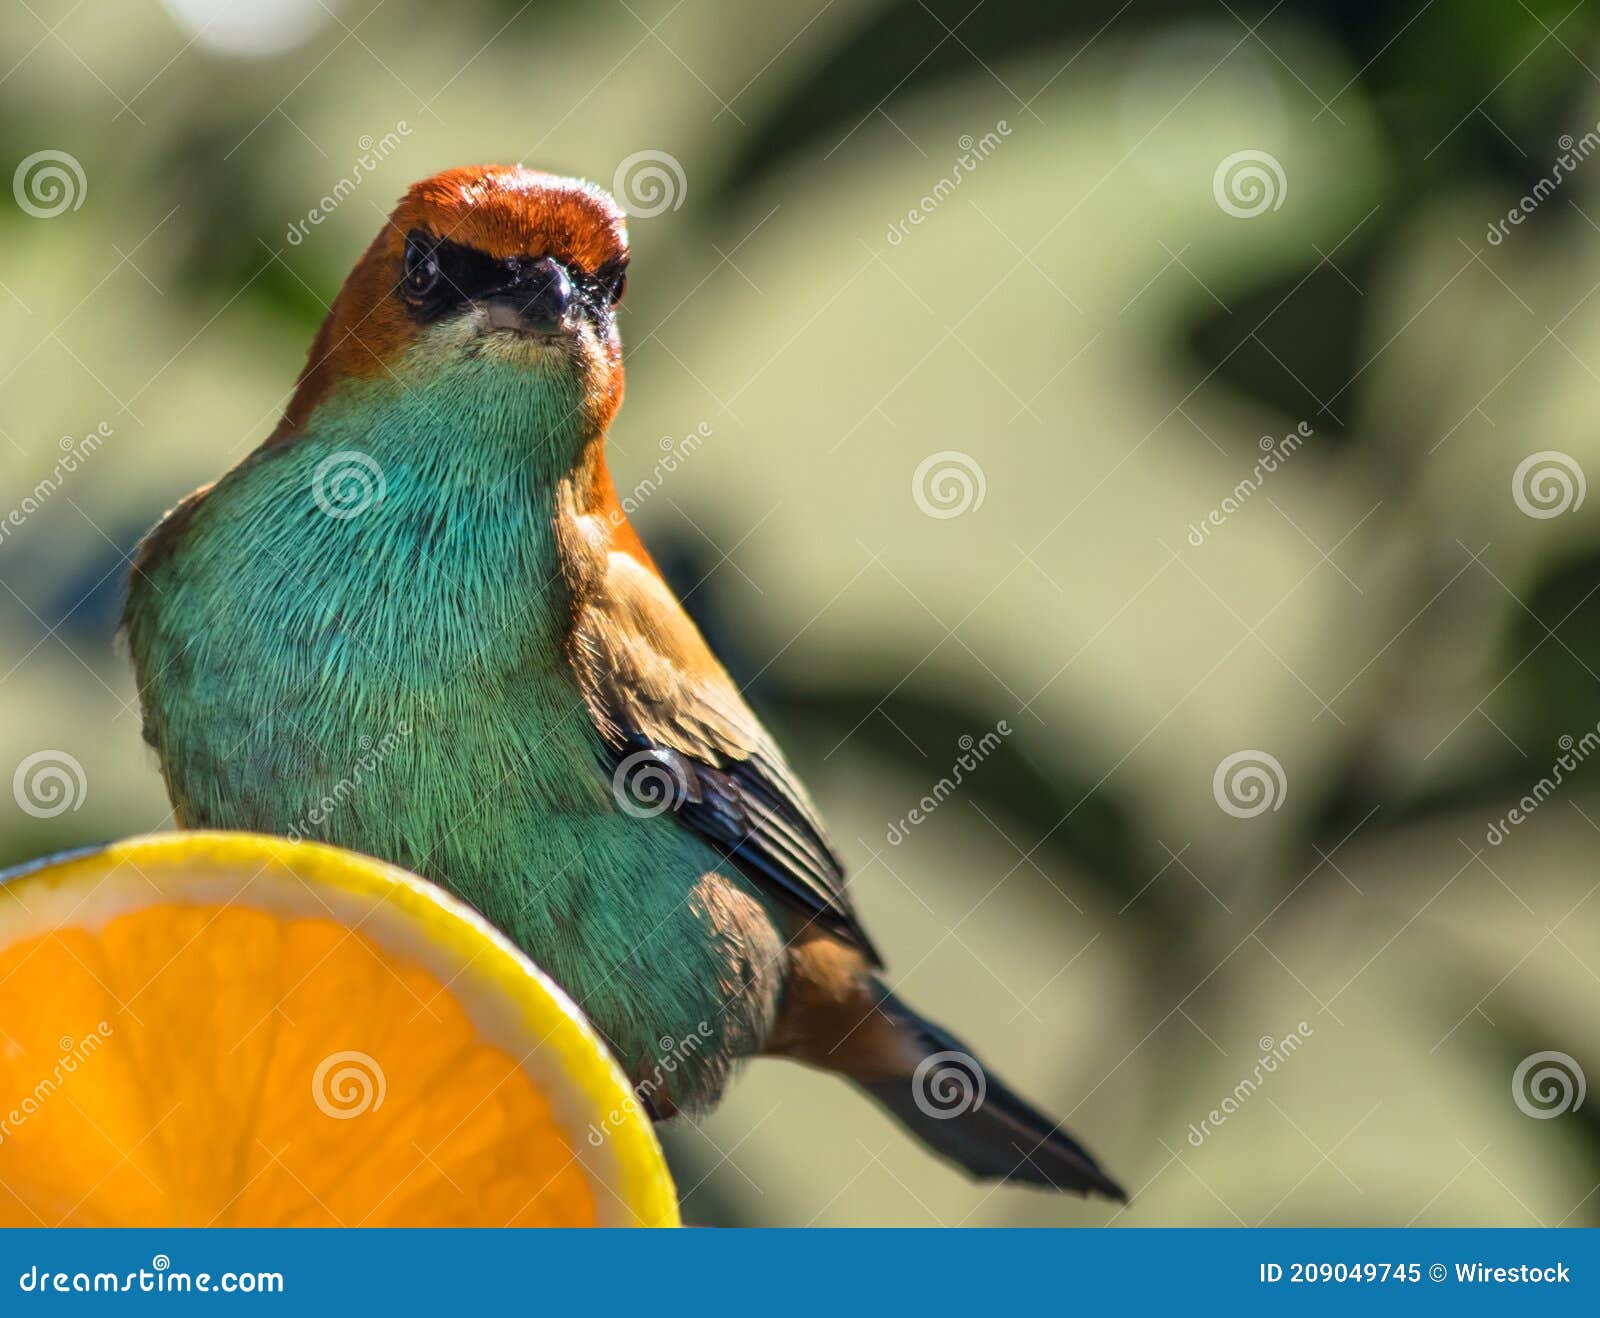 closeup shot of a beautiful chestnut-backed tanager bird (tangara preciosa)